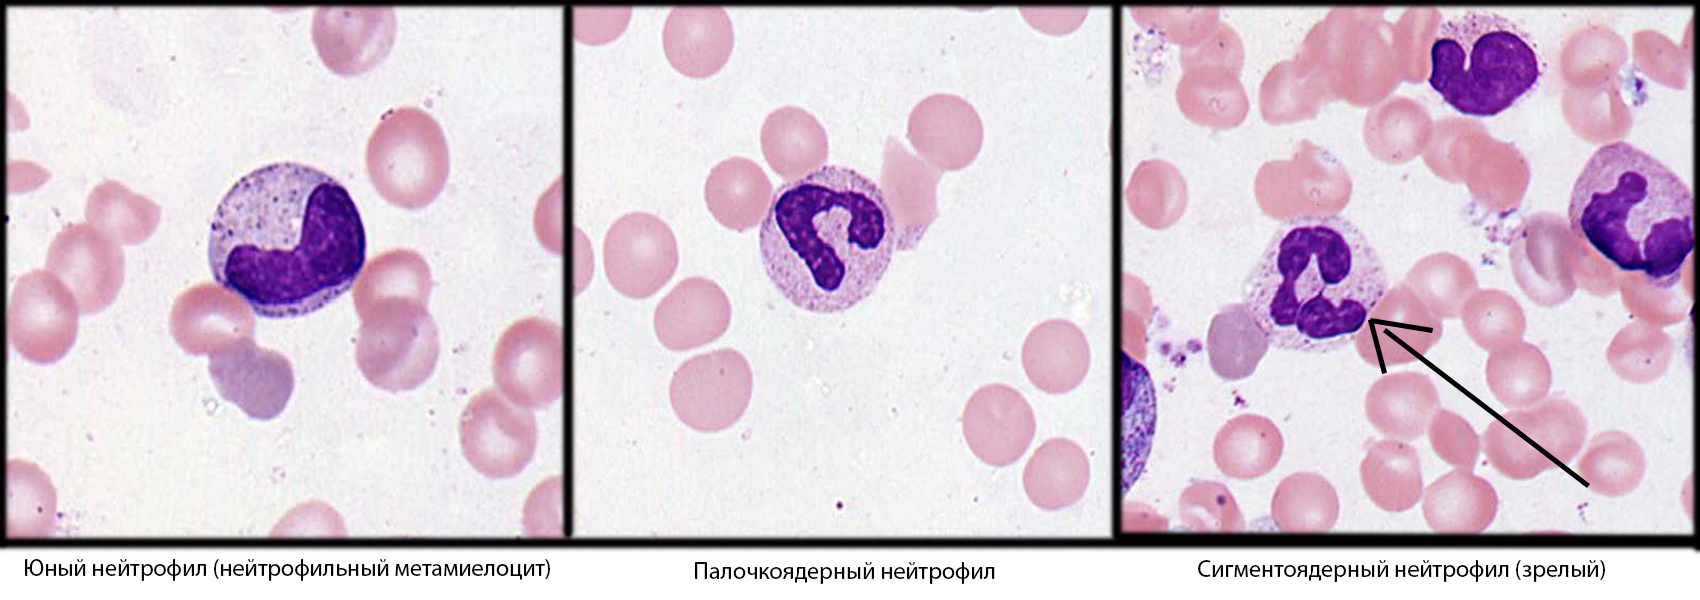 Кровь под микроскопом – фото